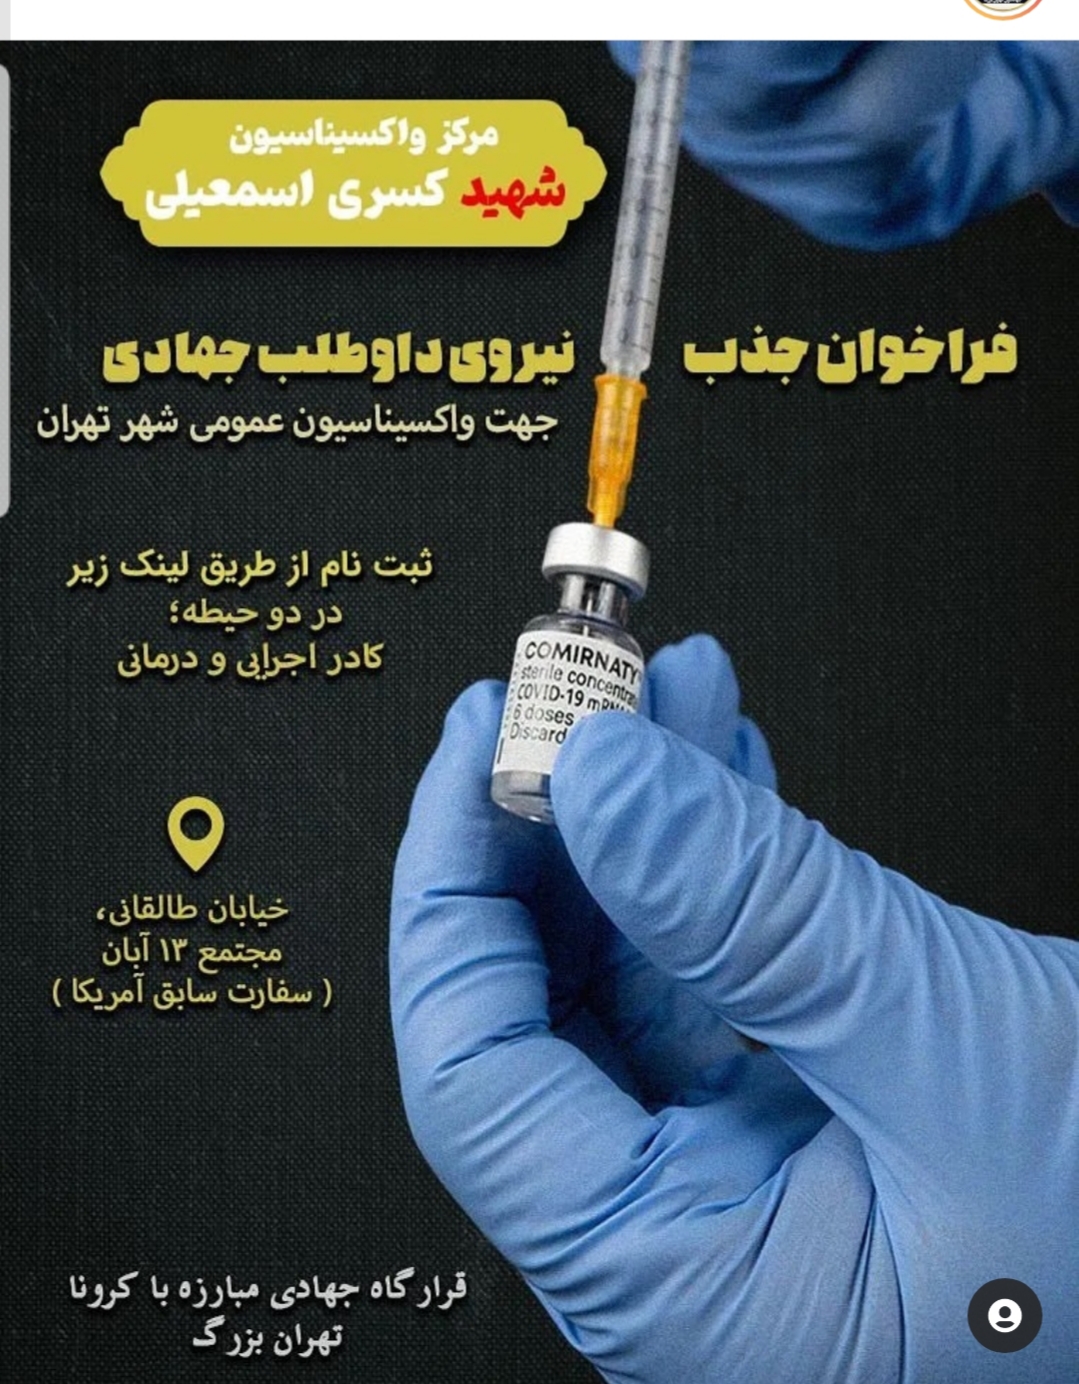 مرکز واکسیناسیون شهید کسری اسماعیلی بسیج دانشجویی راه اندازی شد